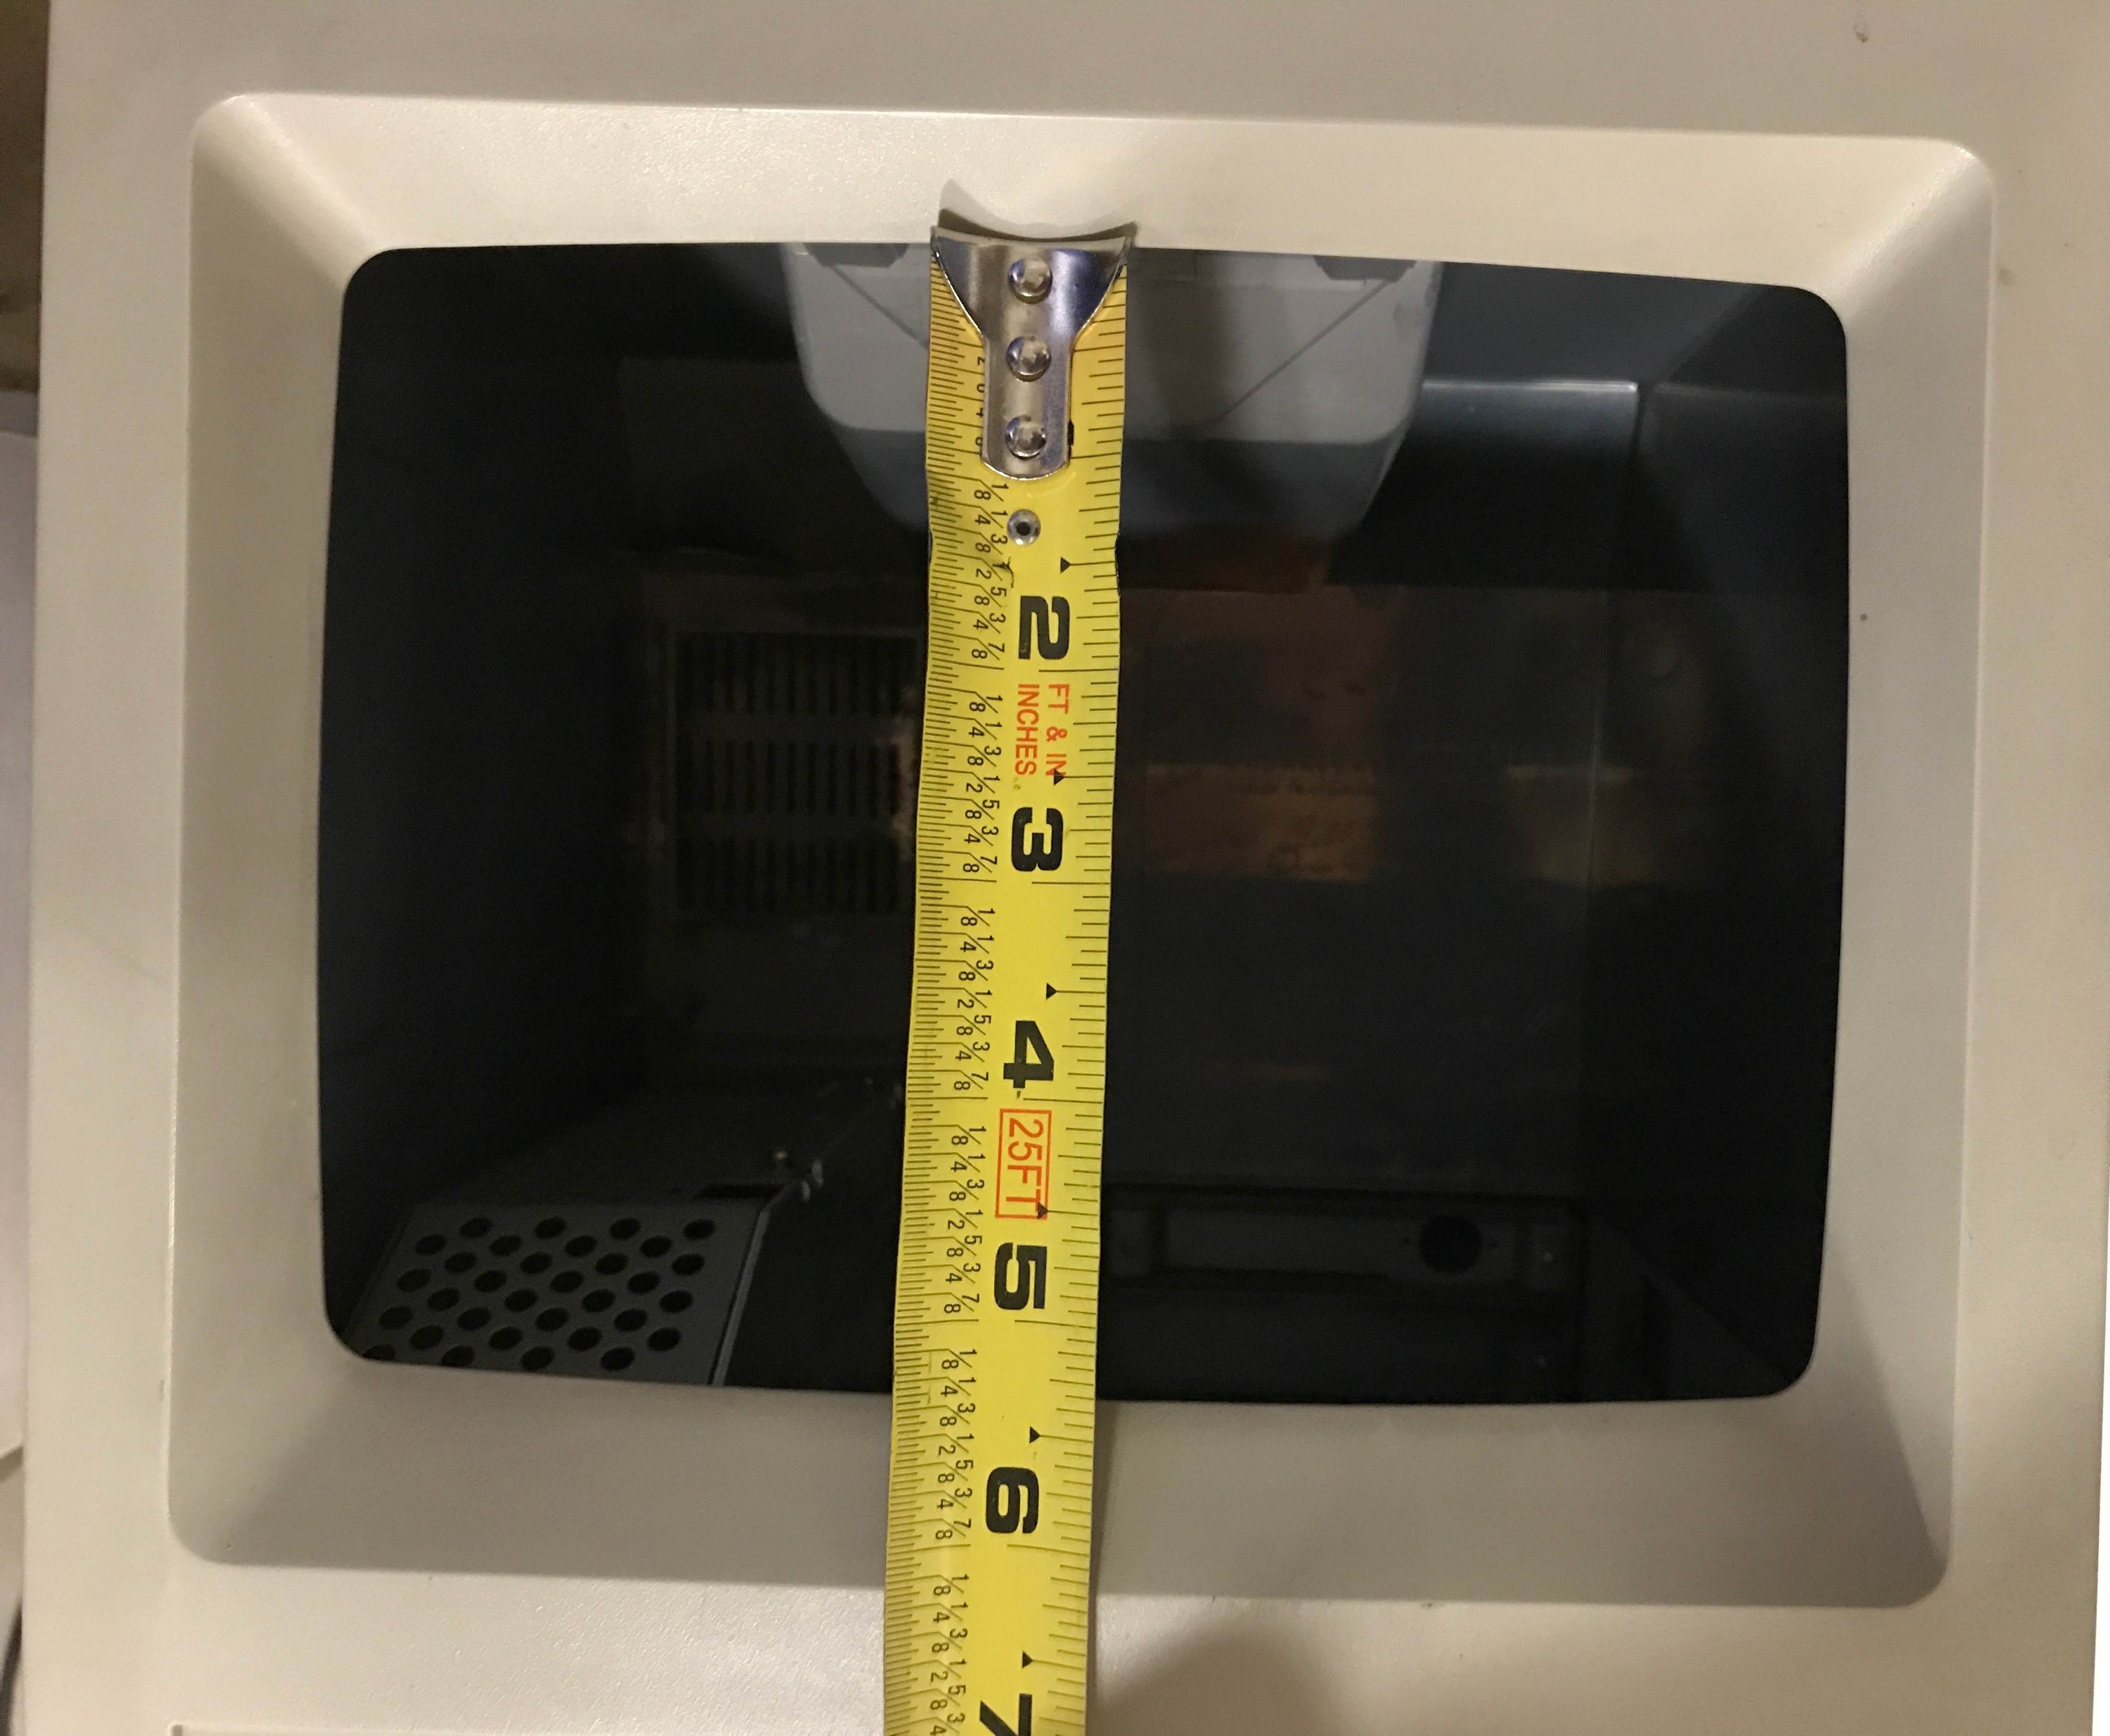 Macintosh SE Display Vertical Measurement